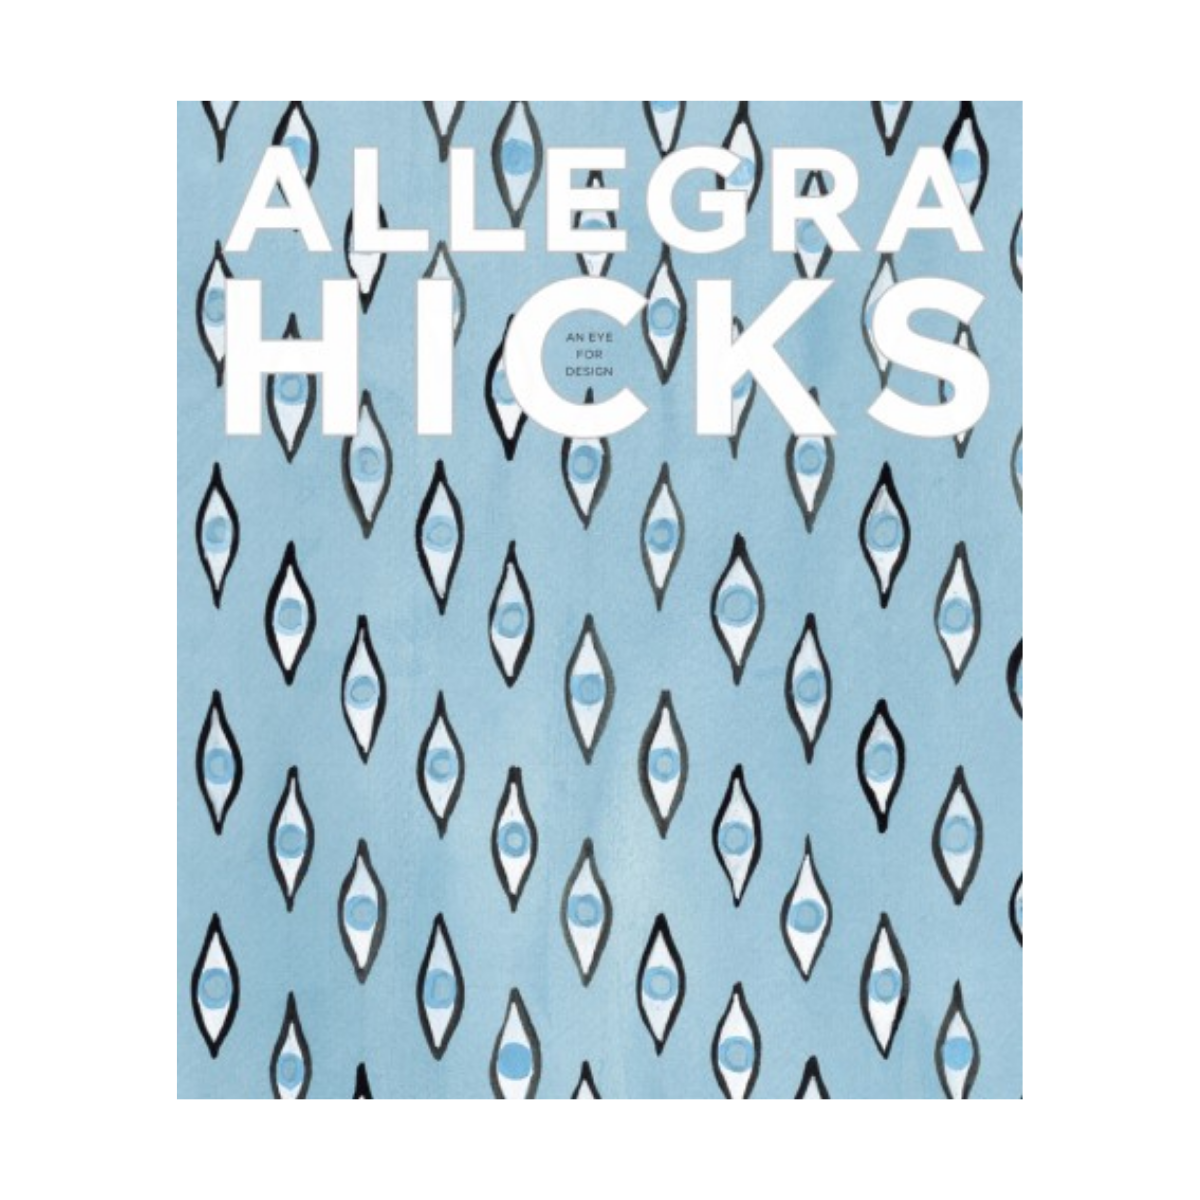 "Allegra Hicks: An Eye for Design"